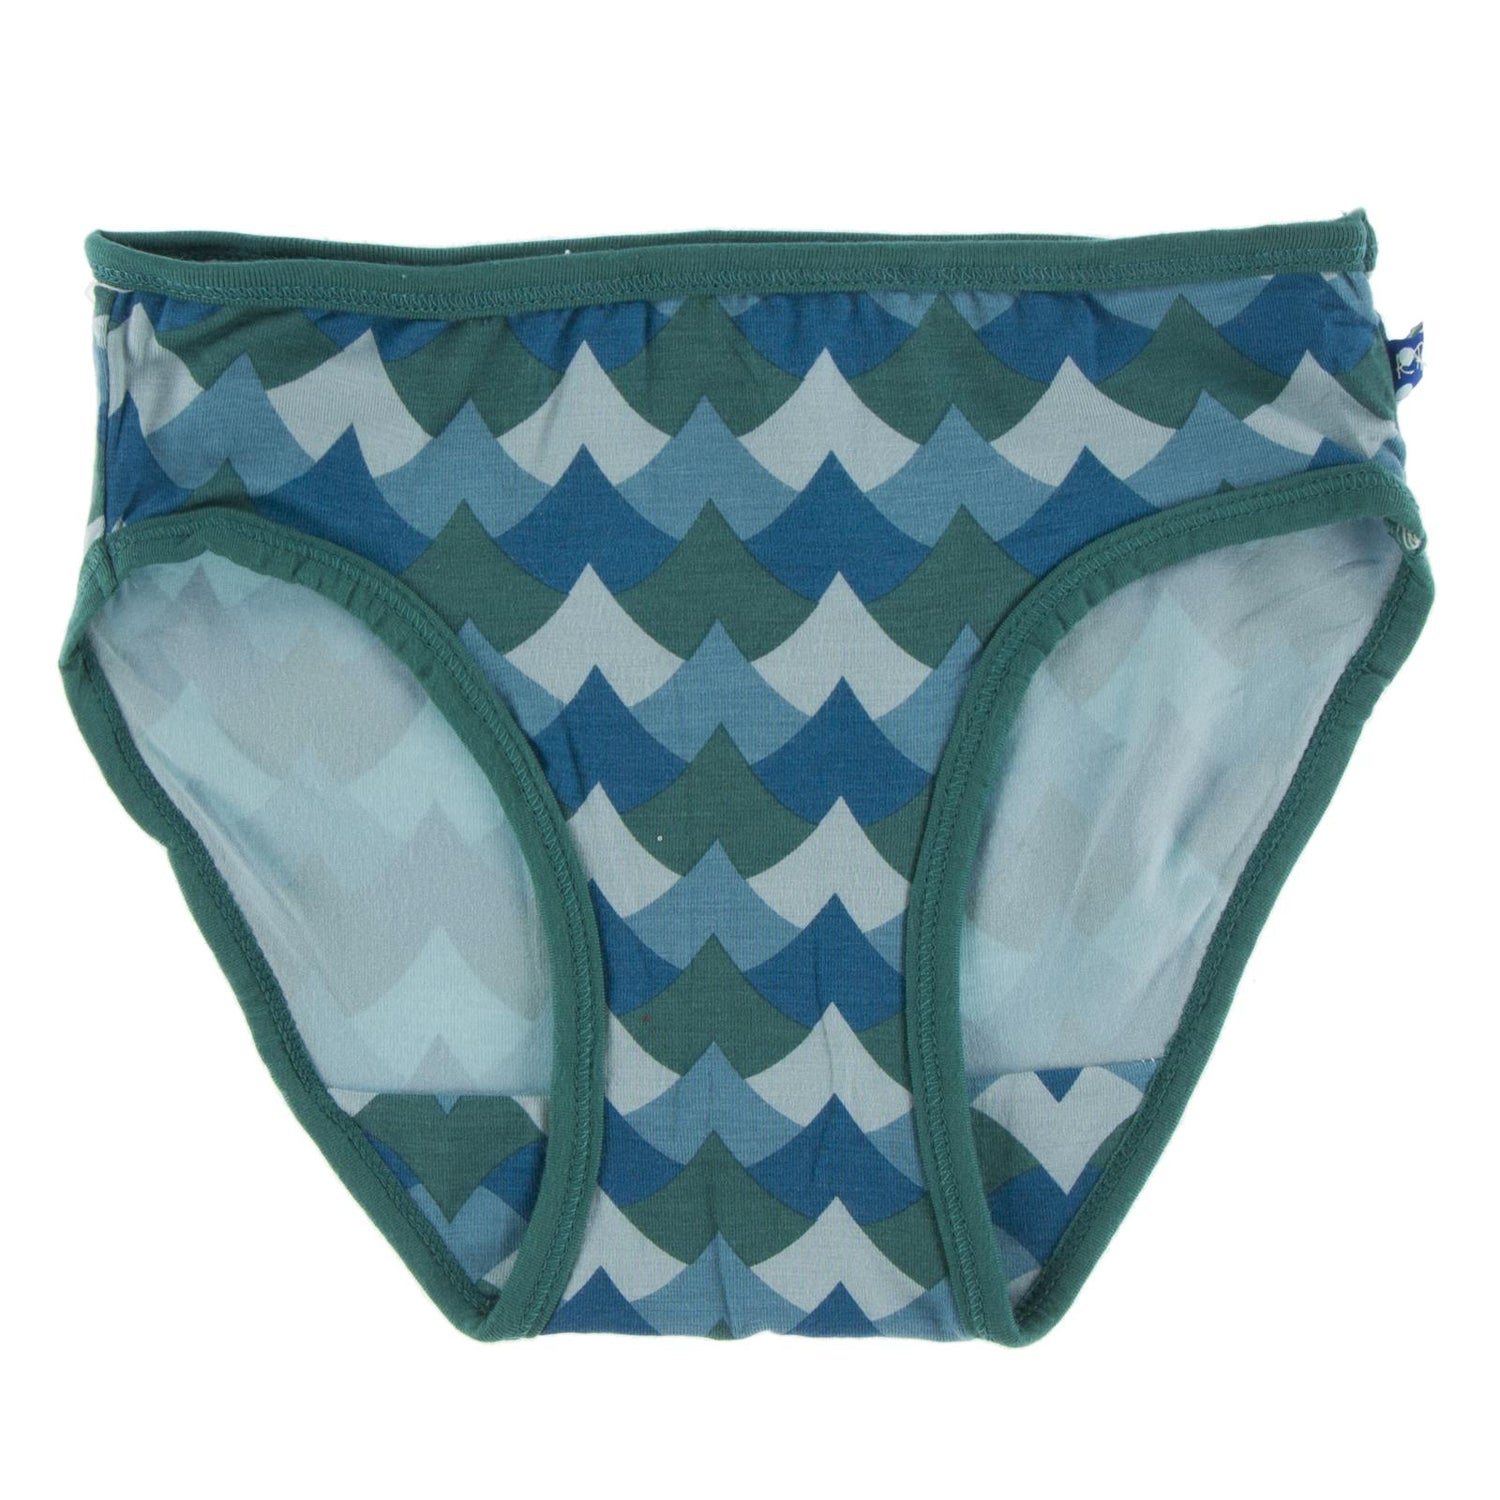 Print Underwear in Ivy Waves with Ivy Trim